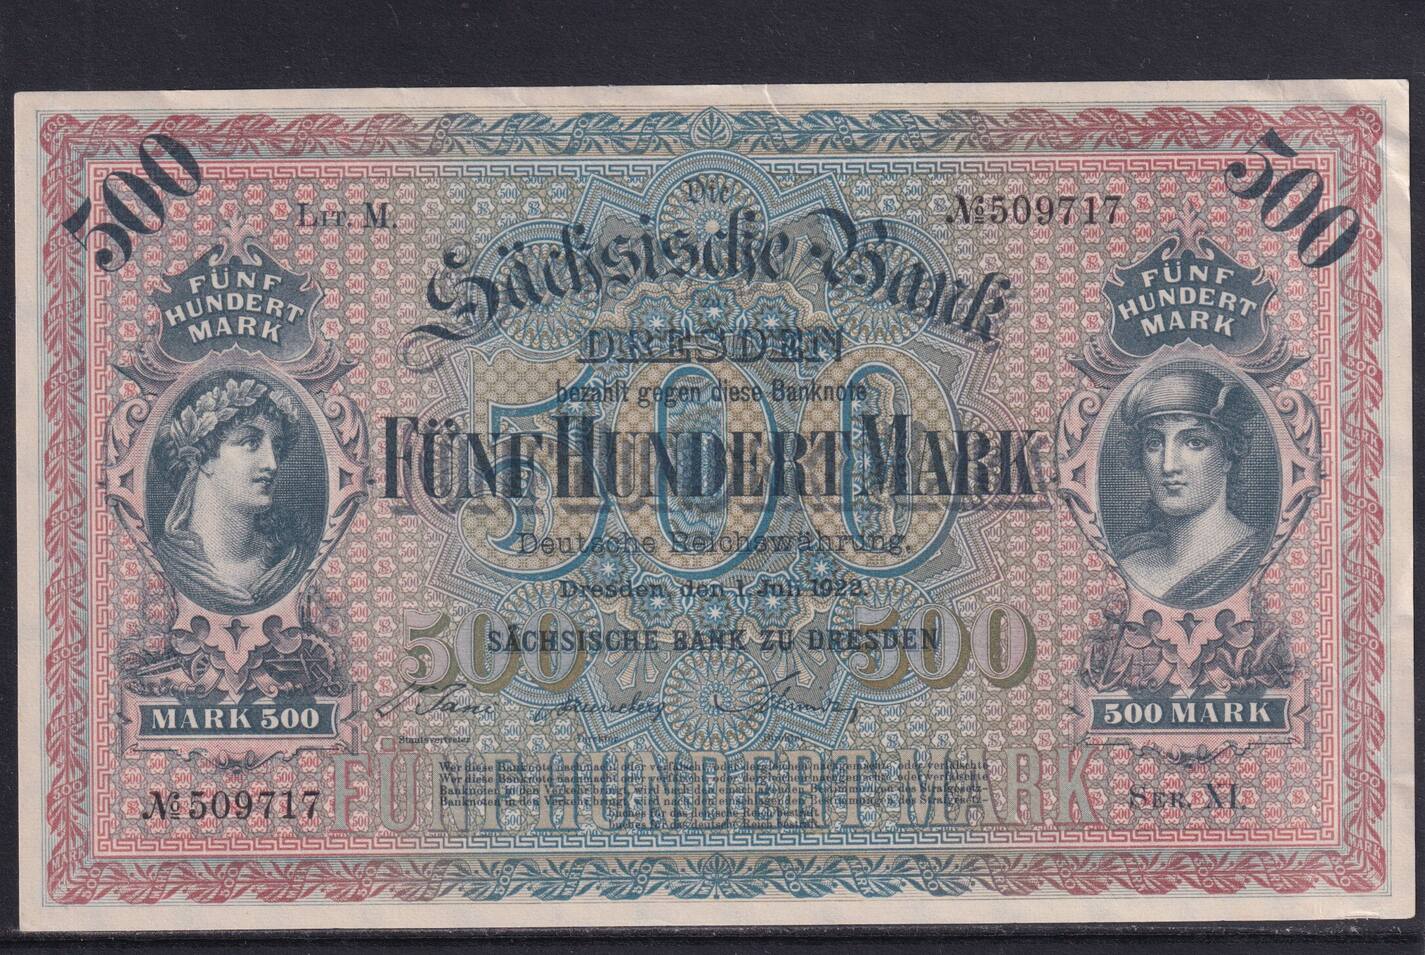 Banking 500. 500 Марок 1922. 500 Марок Германия. Немецкие марки купюры.